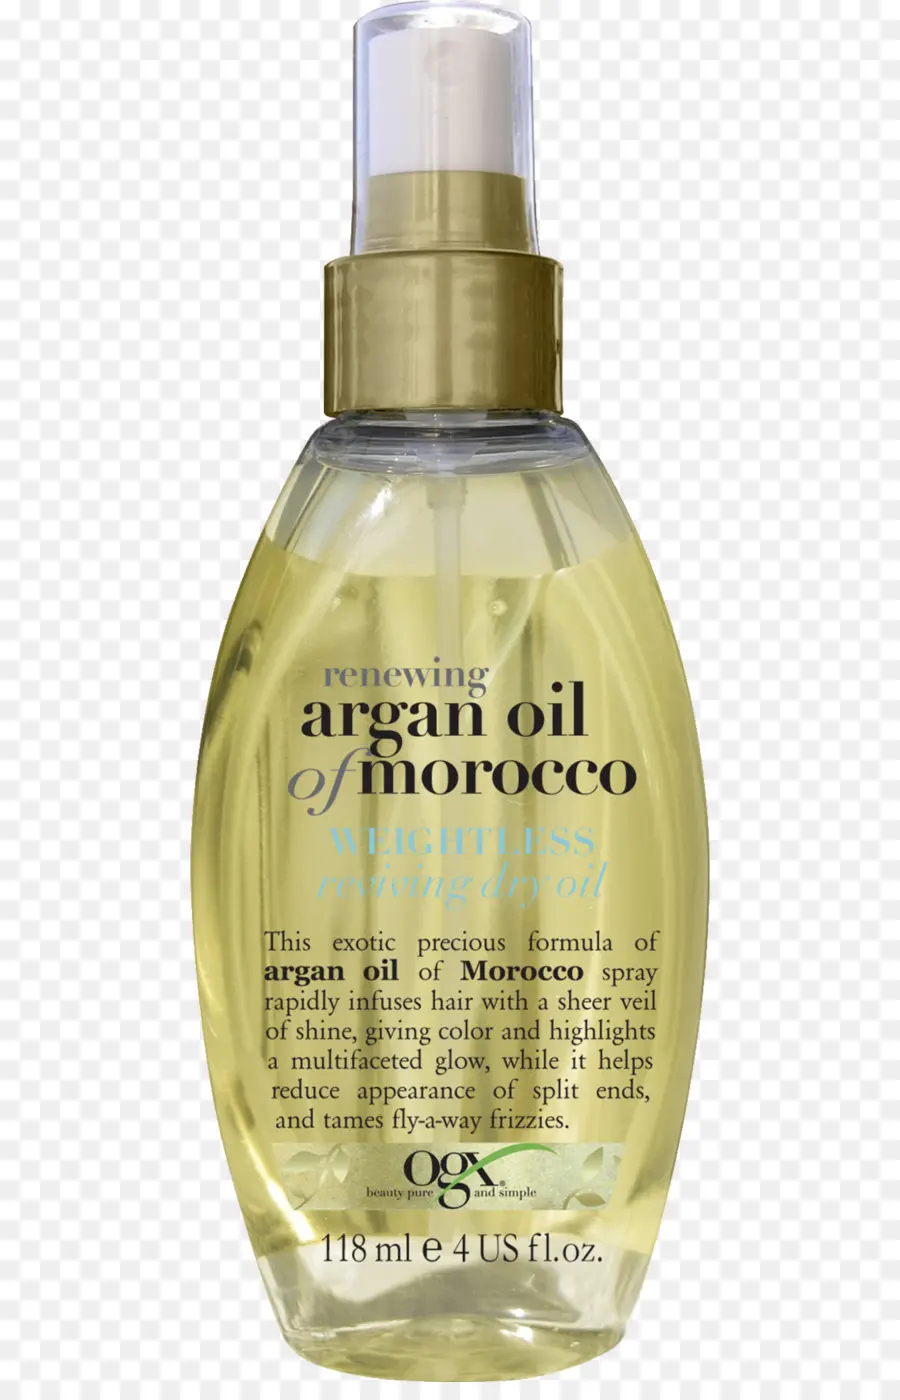 аргановое масло，найти обновление марокканское аргановое масло невесомые исцеления сухой масло PNG